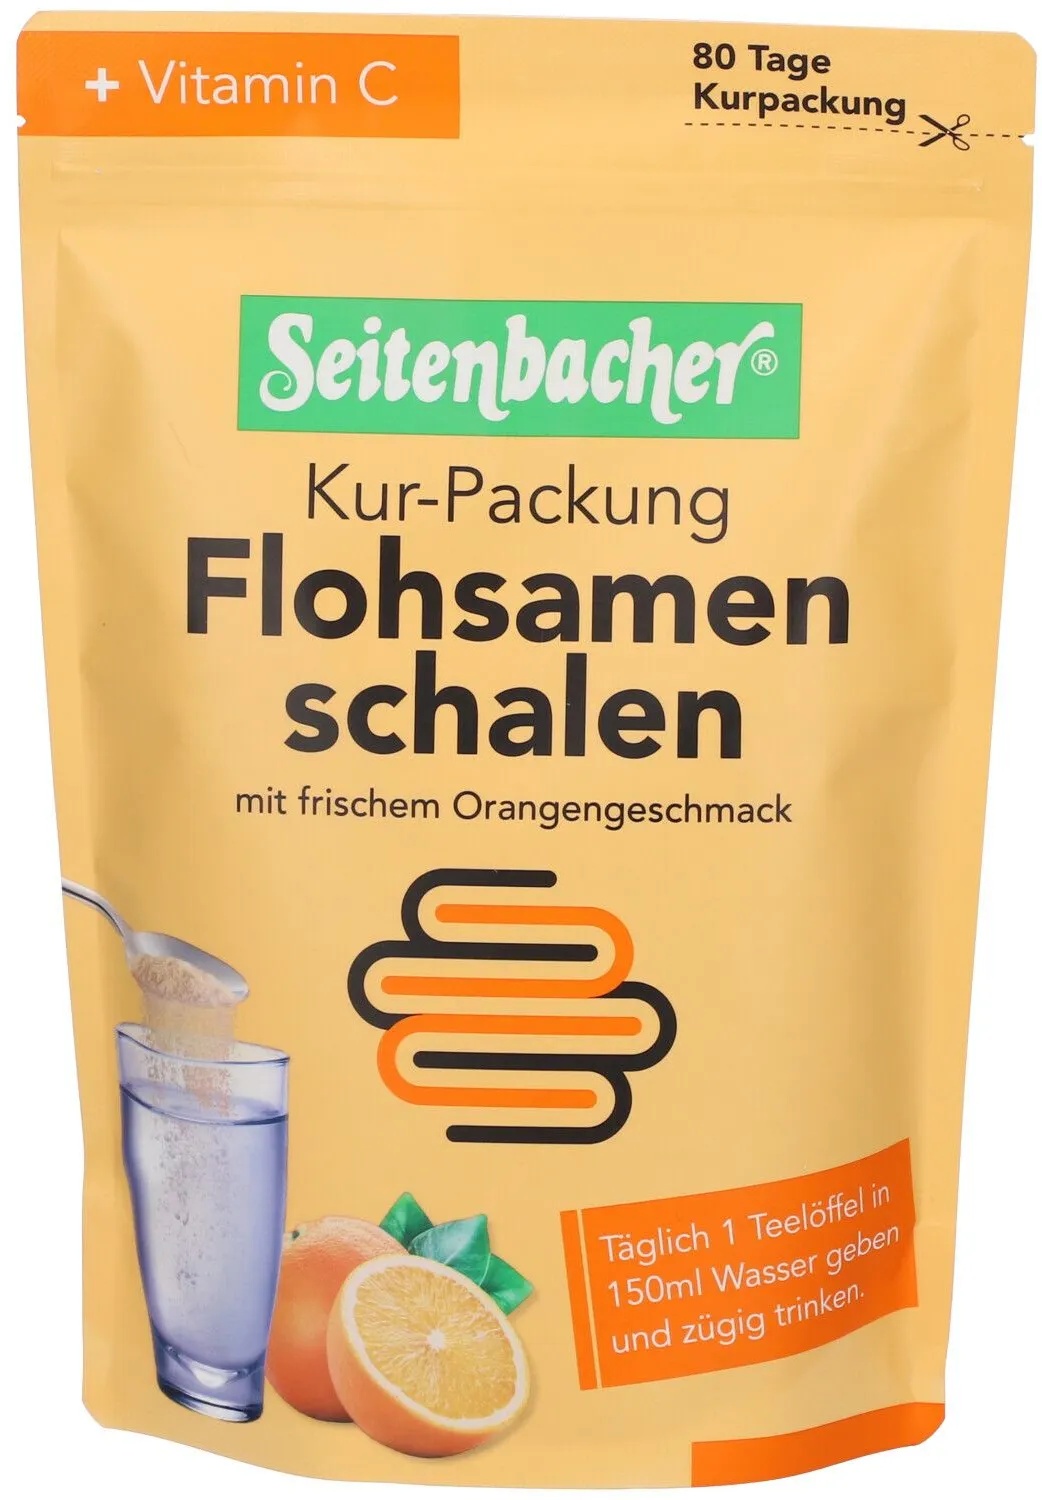 Seitenbacher® Flohsamenschalen Kur-Packung